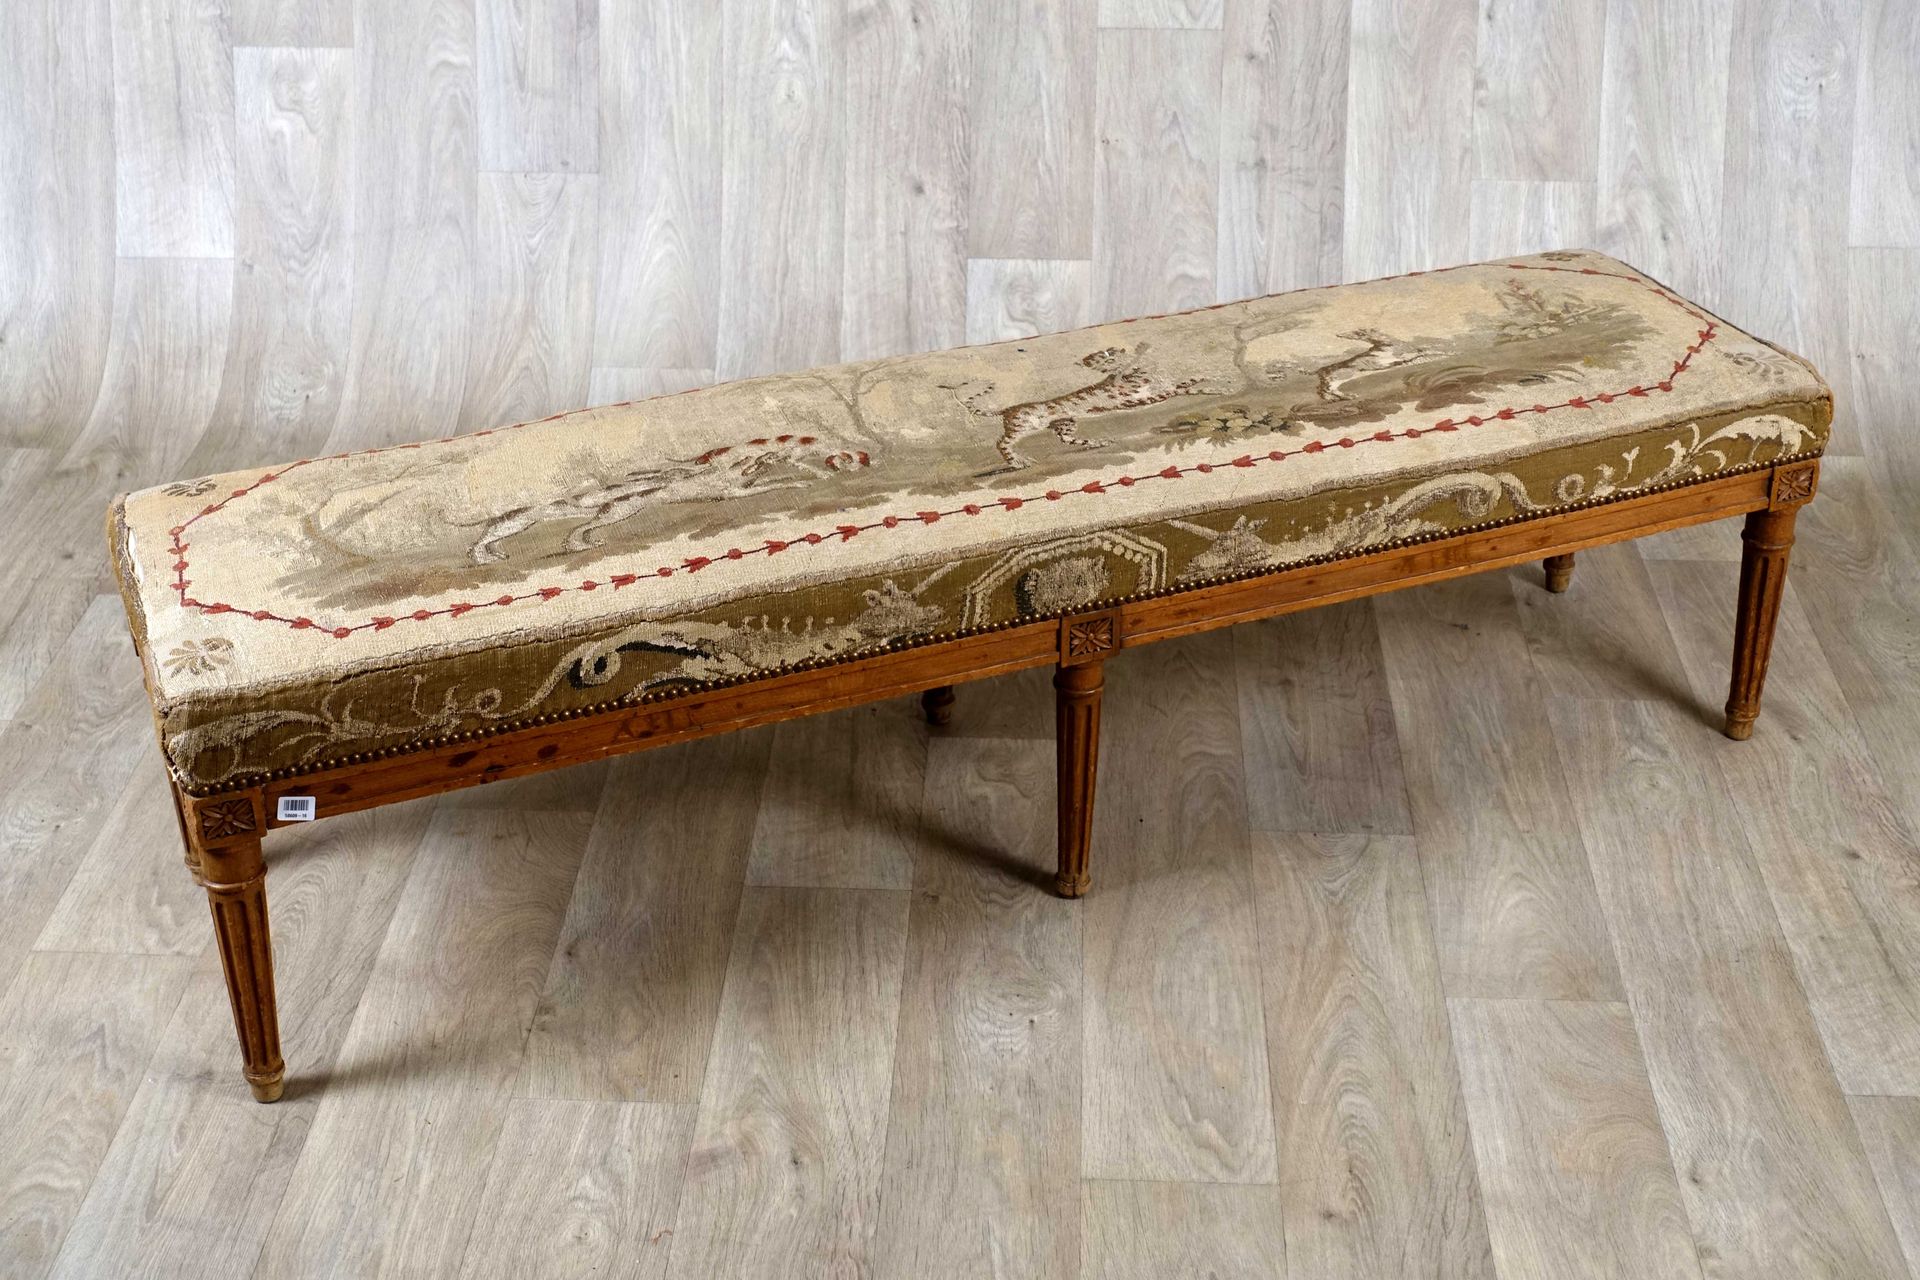 Banquette. 模制的支架和带凹槽的锥形腿。榉木软垫，带有豹纹狩猎装饰。路易十六时期的作品。尺寸：42 x 162 x 41厘米。